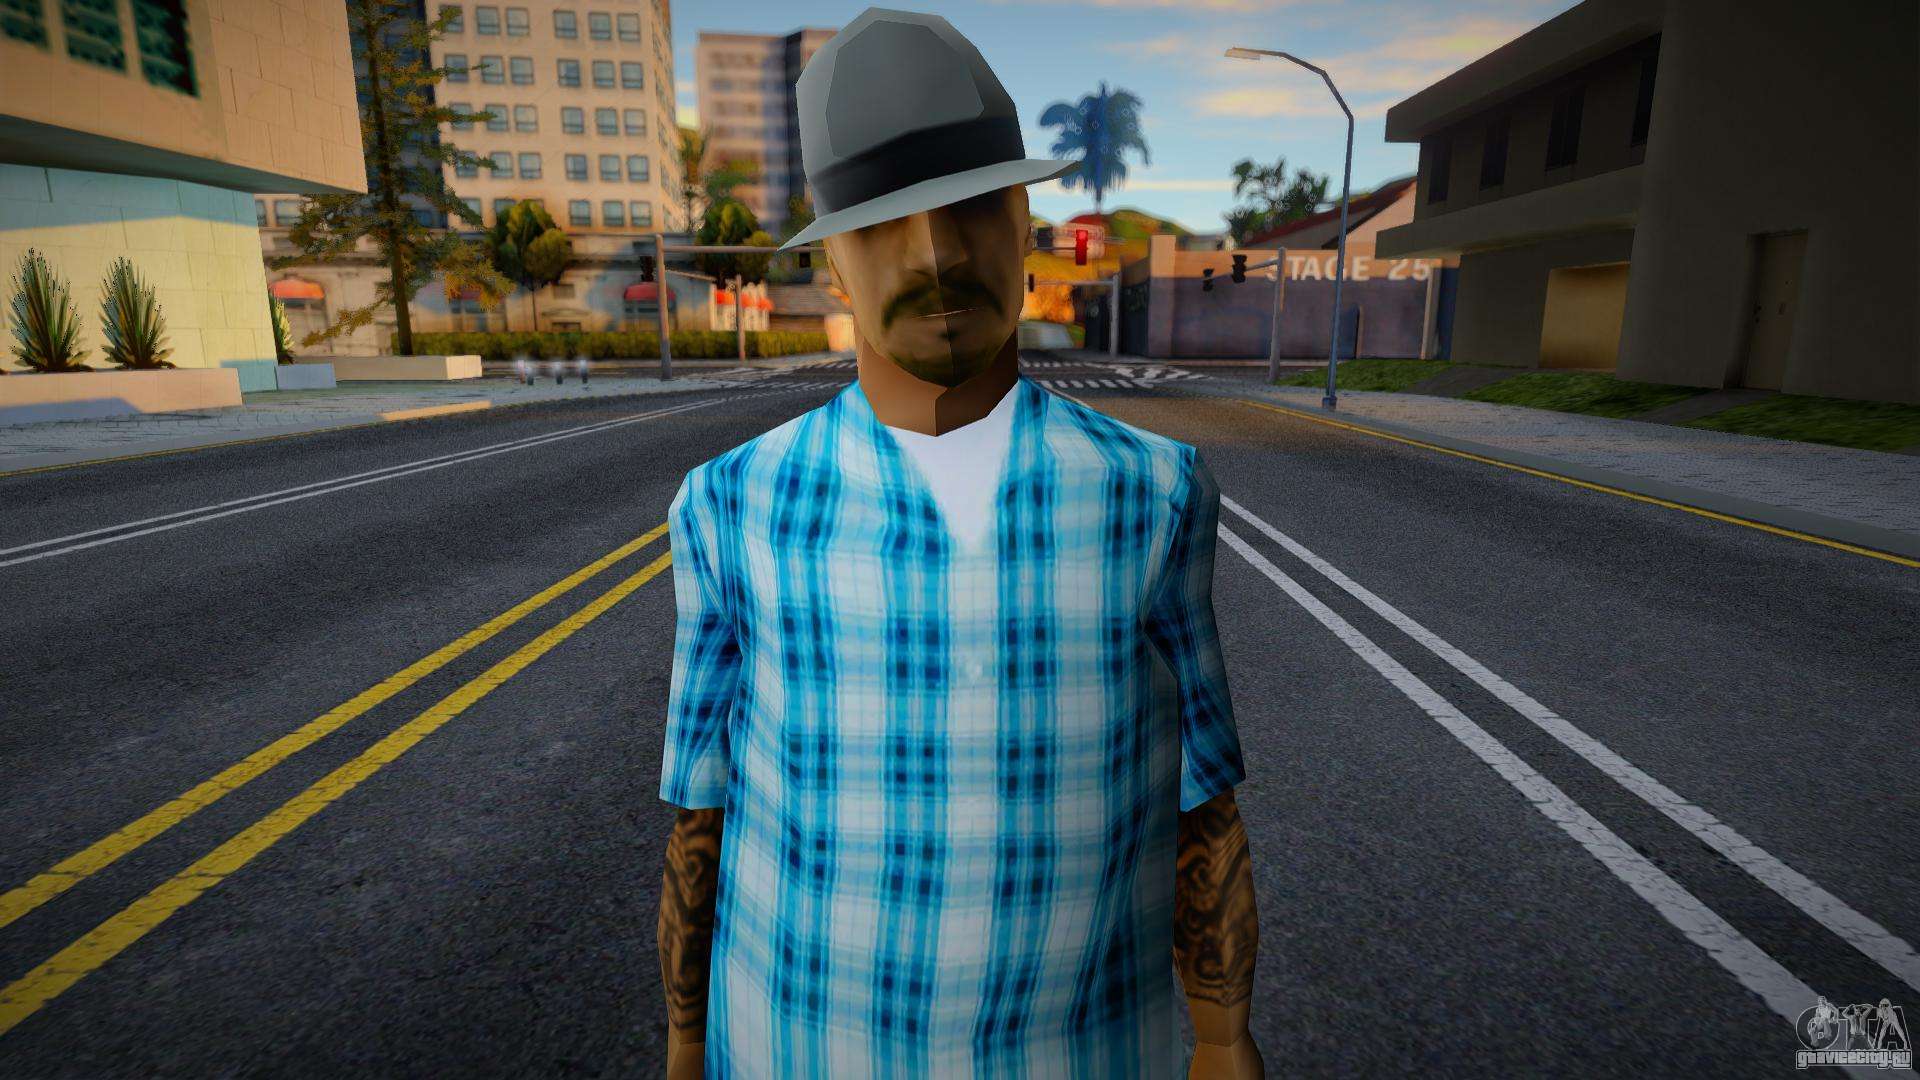 New Rifa Gang Skin v1 for GTA San Andreas